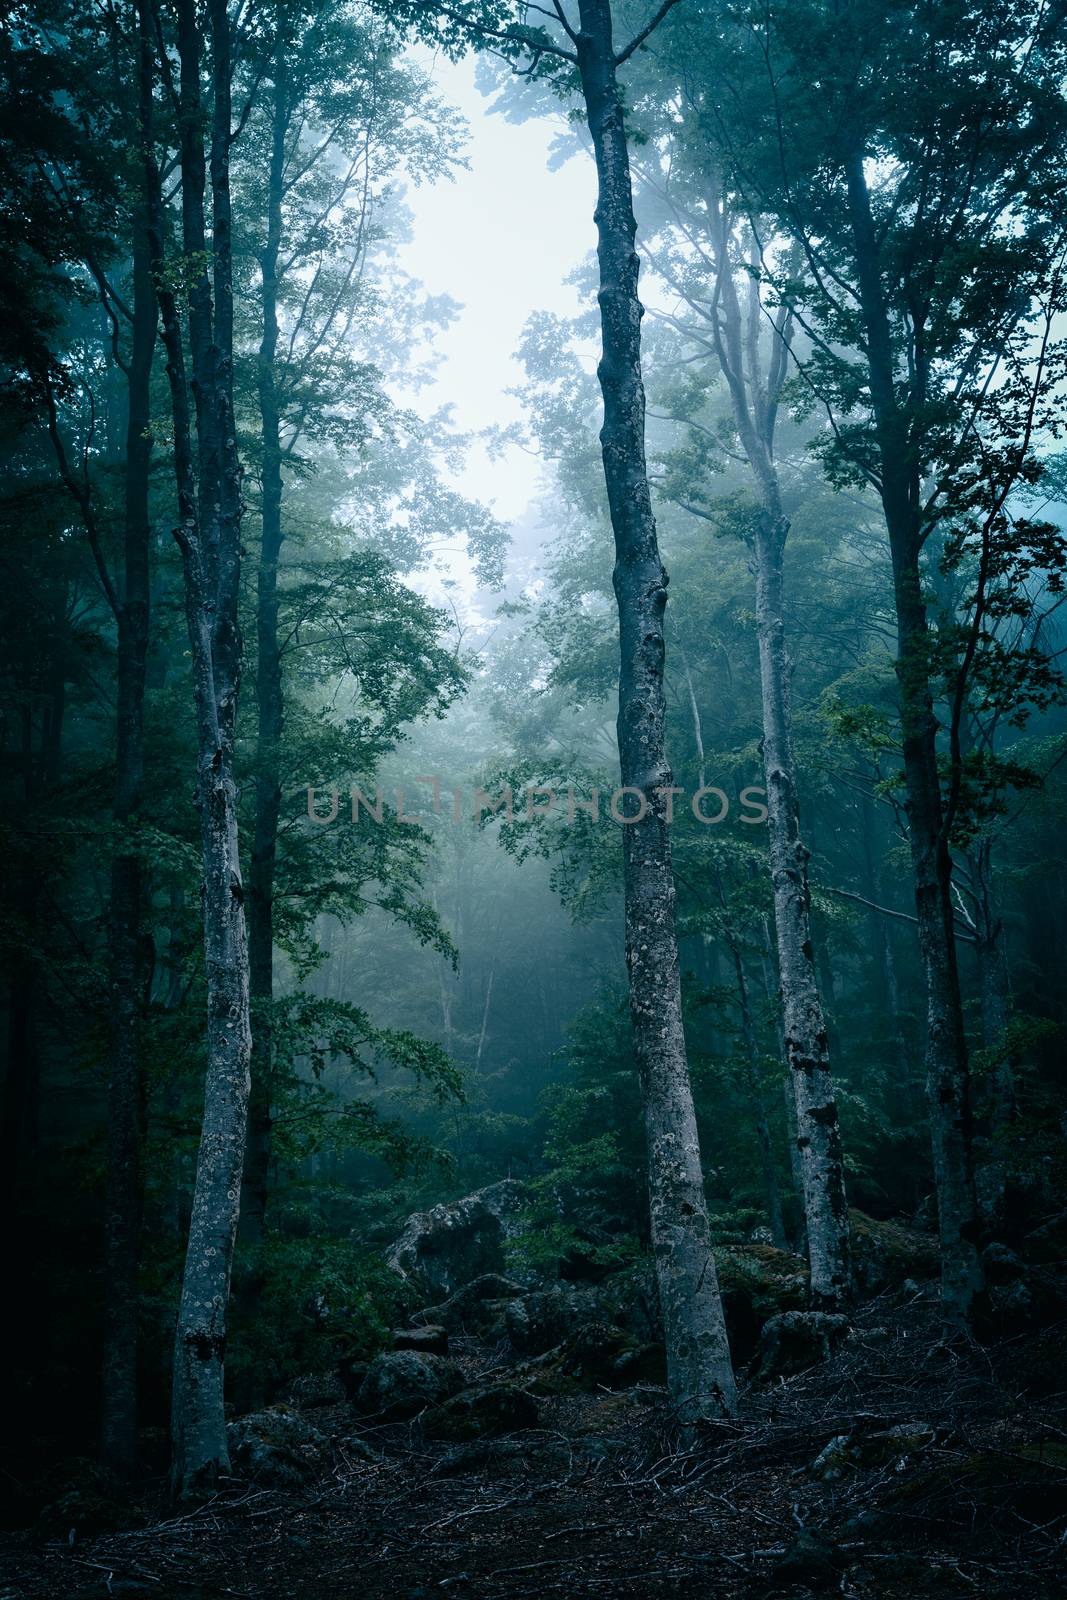 Dark forest with fog by LuigiMorbidelli